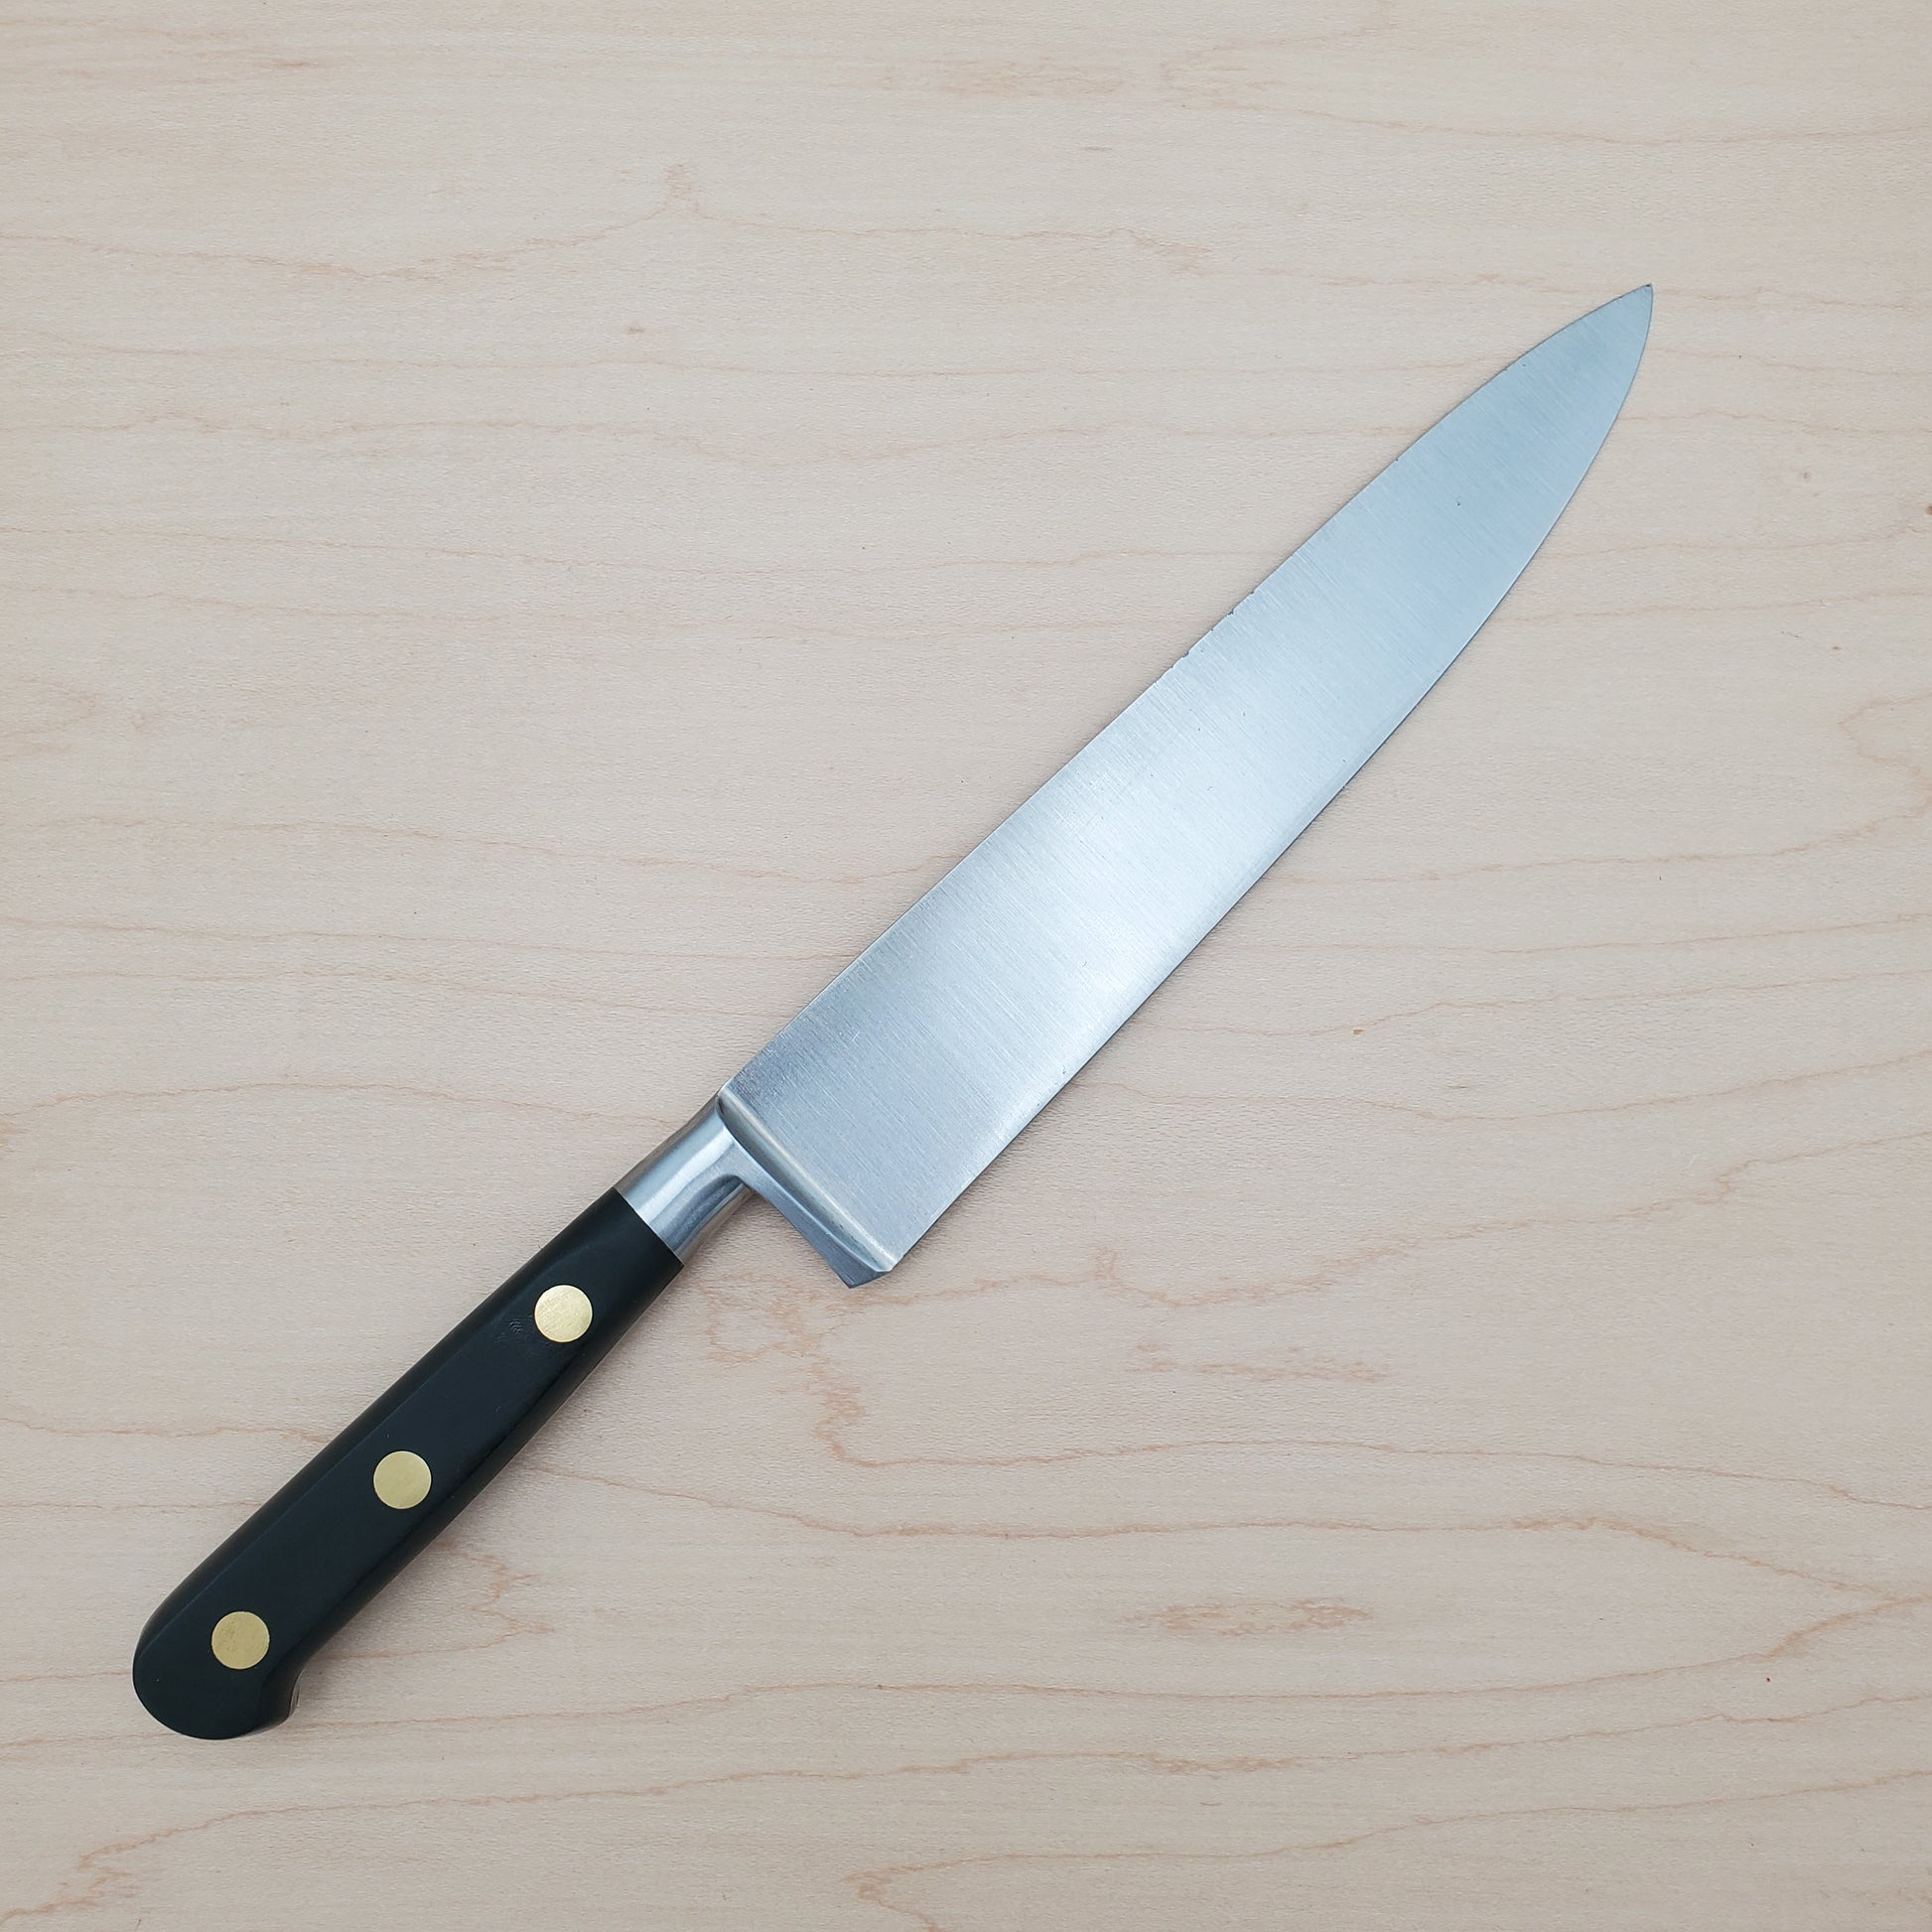 Sabatier 8 Chef's Knife Carbone Steel